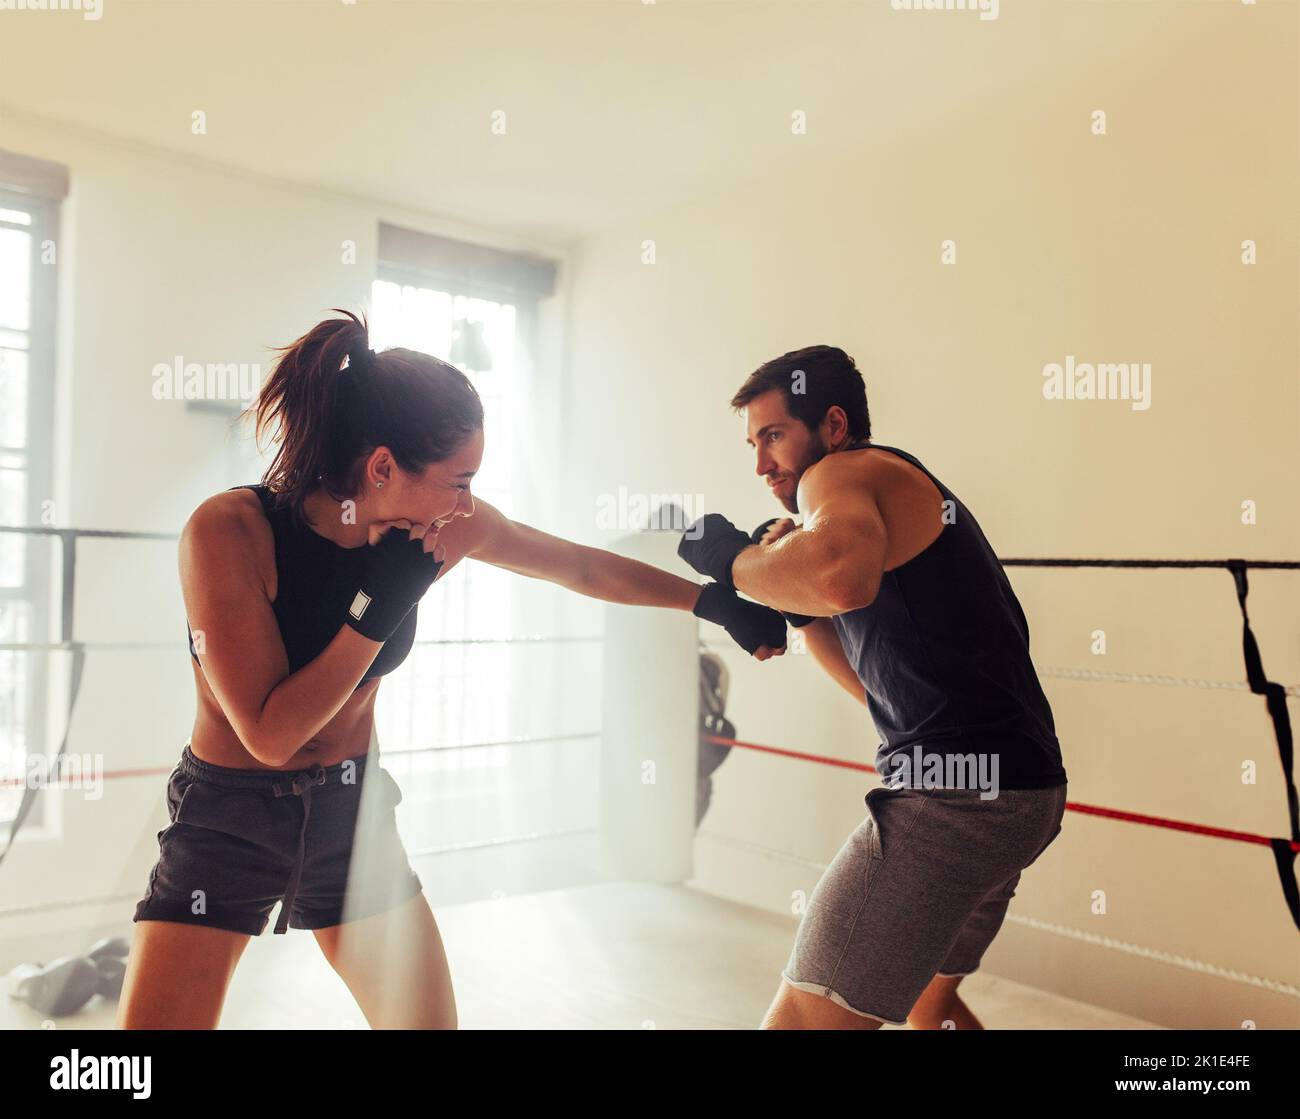 Dos jóvenes atletas se lanzan sin guantes en un ring de boxeo. Dos boxers que tienen una sesión de entrenamiento en un gimnasio de boxeo. Foto de stock